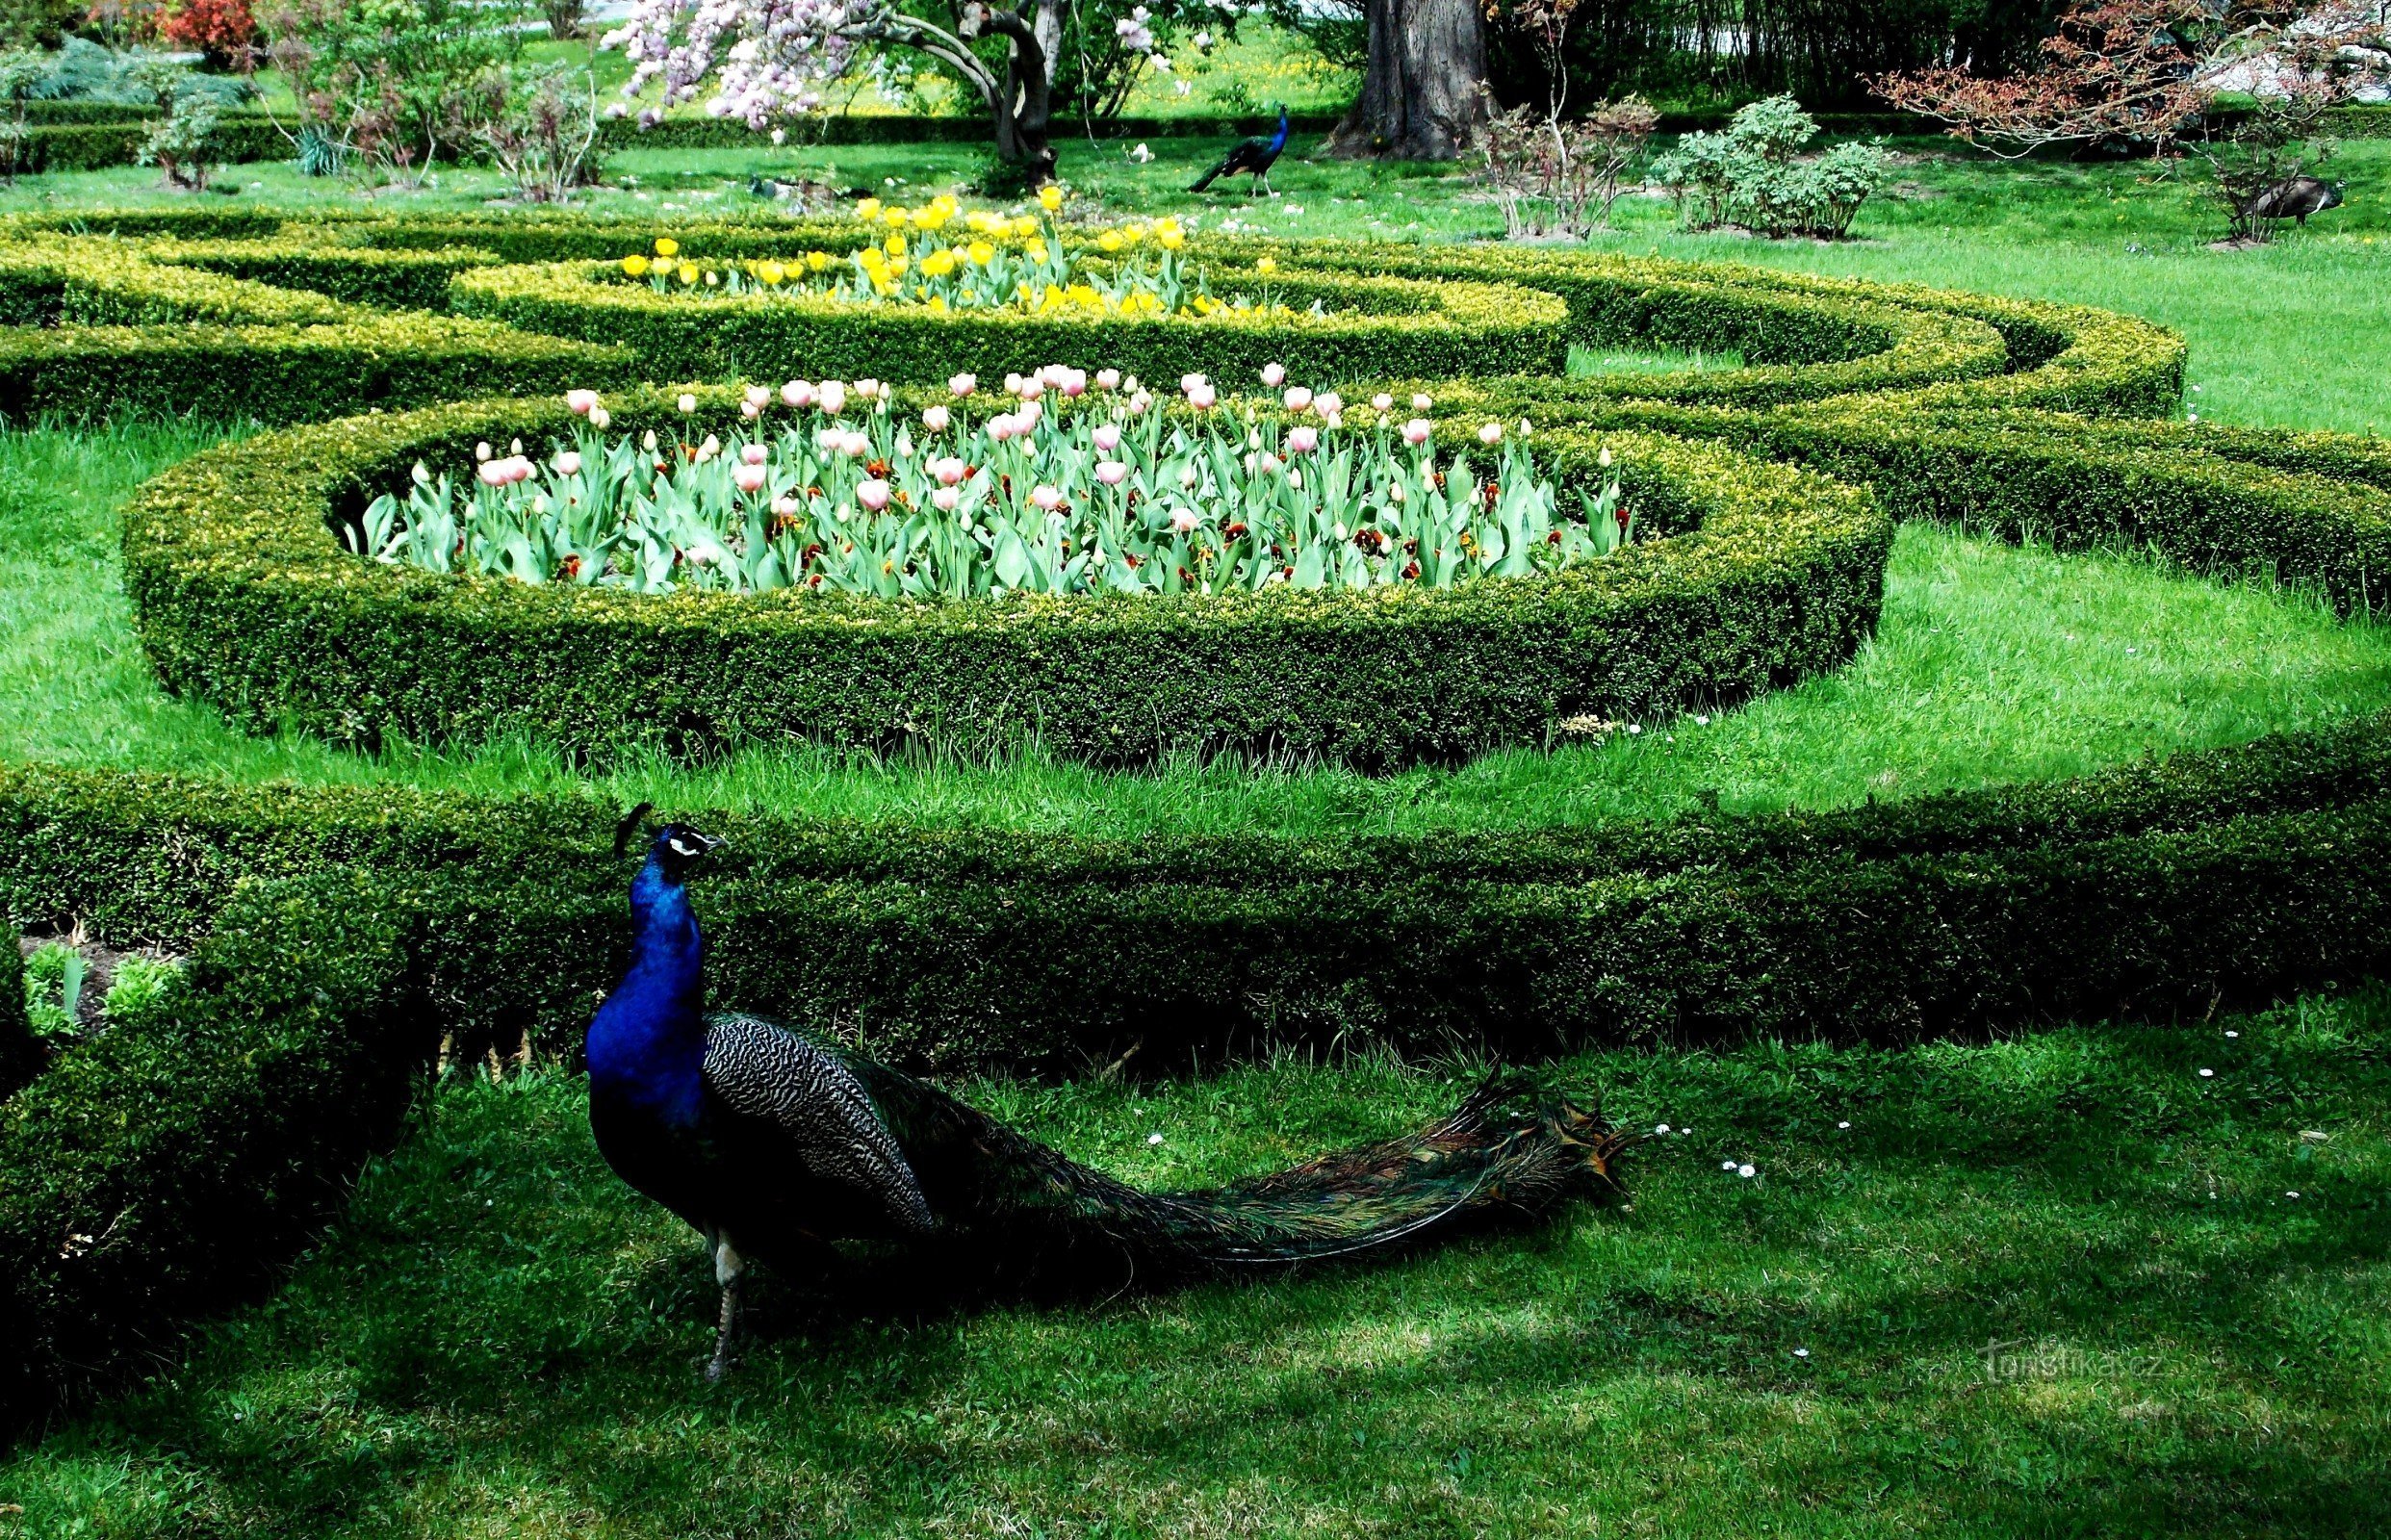 MINI ZOO vrt u Podzámecká vrtu u Kroměřížu